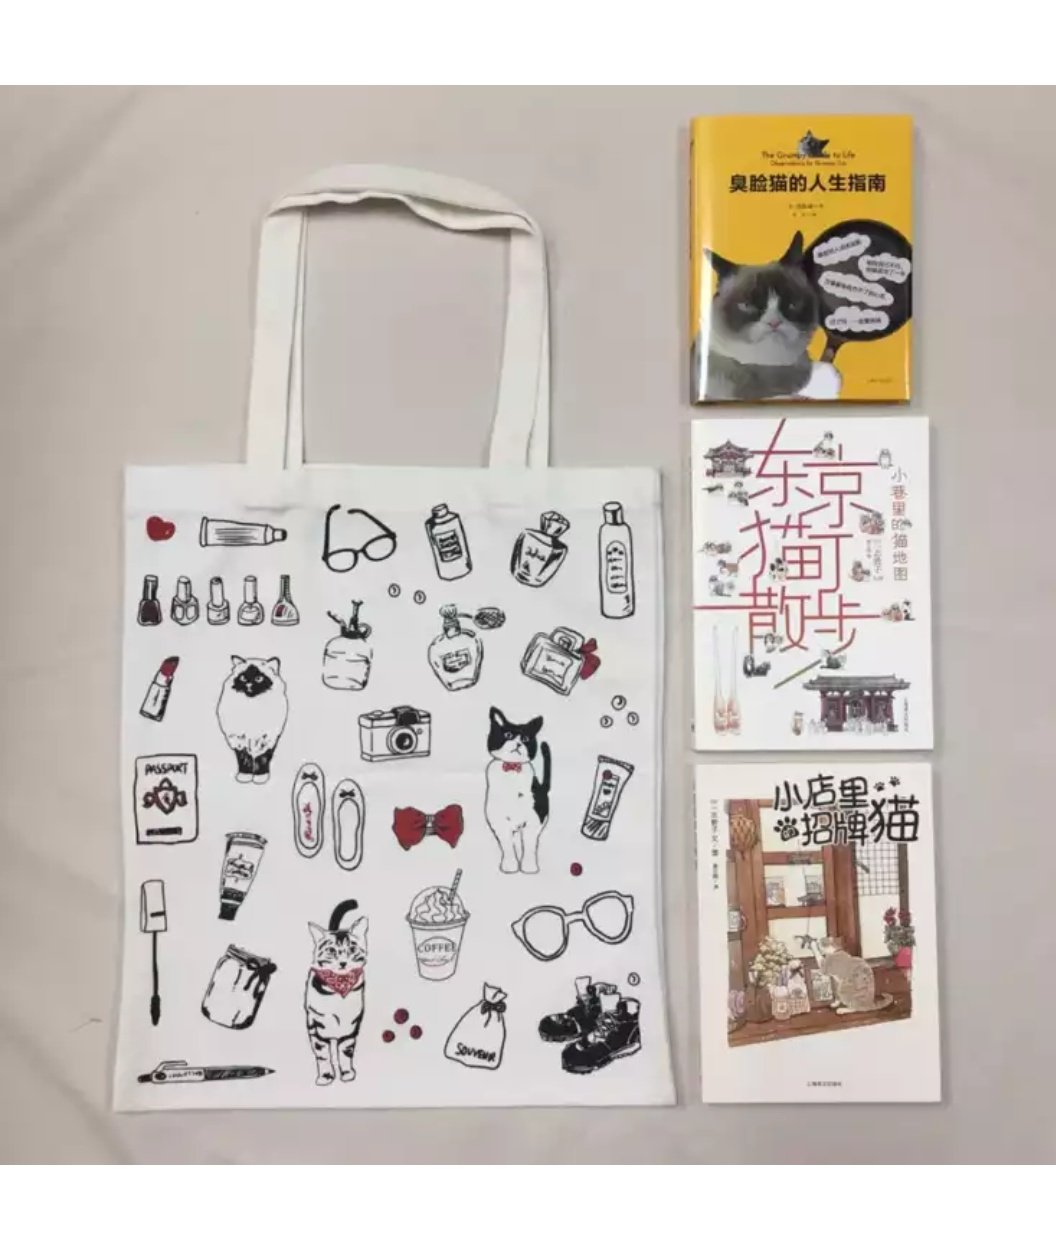 三本书加一个帆布袋 价格超值 两本是日系的绘本 还有一本是网红猫 帆布袋也很可爱 外面是一个纸盒子包装